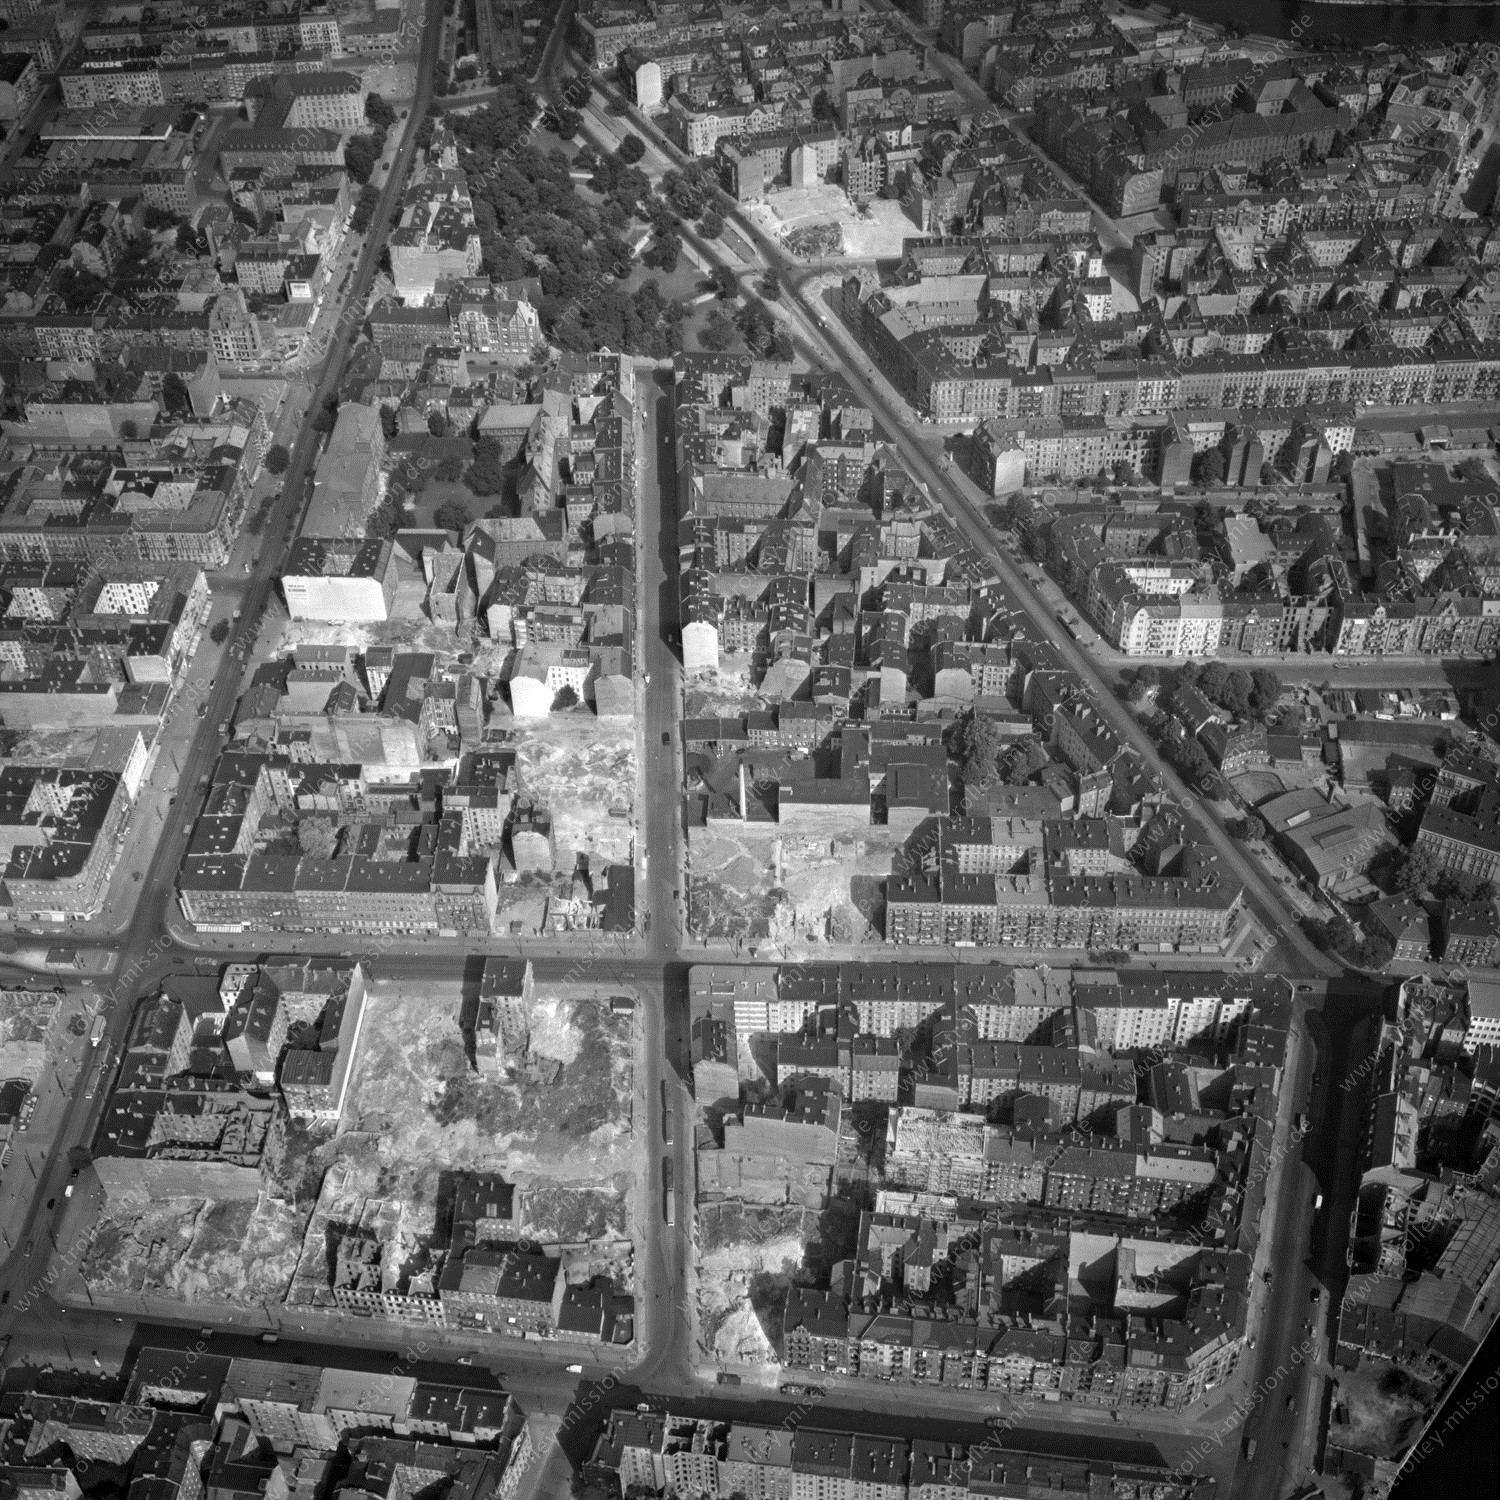 Alte Fotos und Luftbilder von Berlin - Luftbildaufnahme Nr. 08 - Historische Luftaufnahmen von West-Berlin aus dem Jahr 1954 - Flugstrecke Uniform